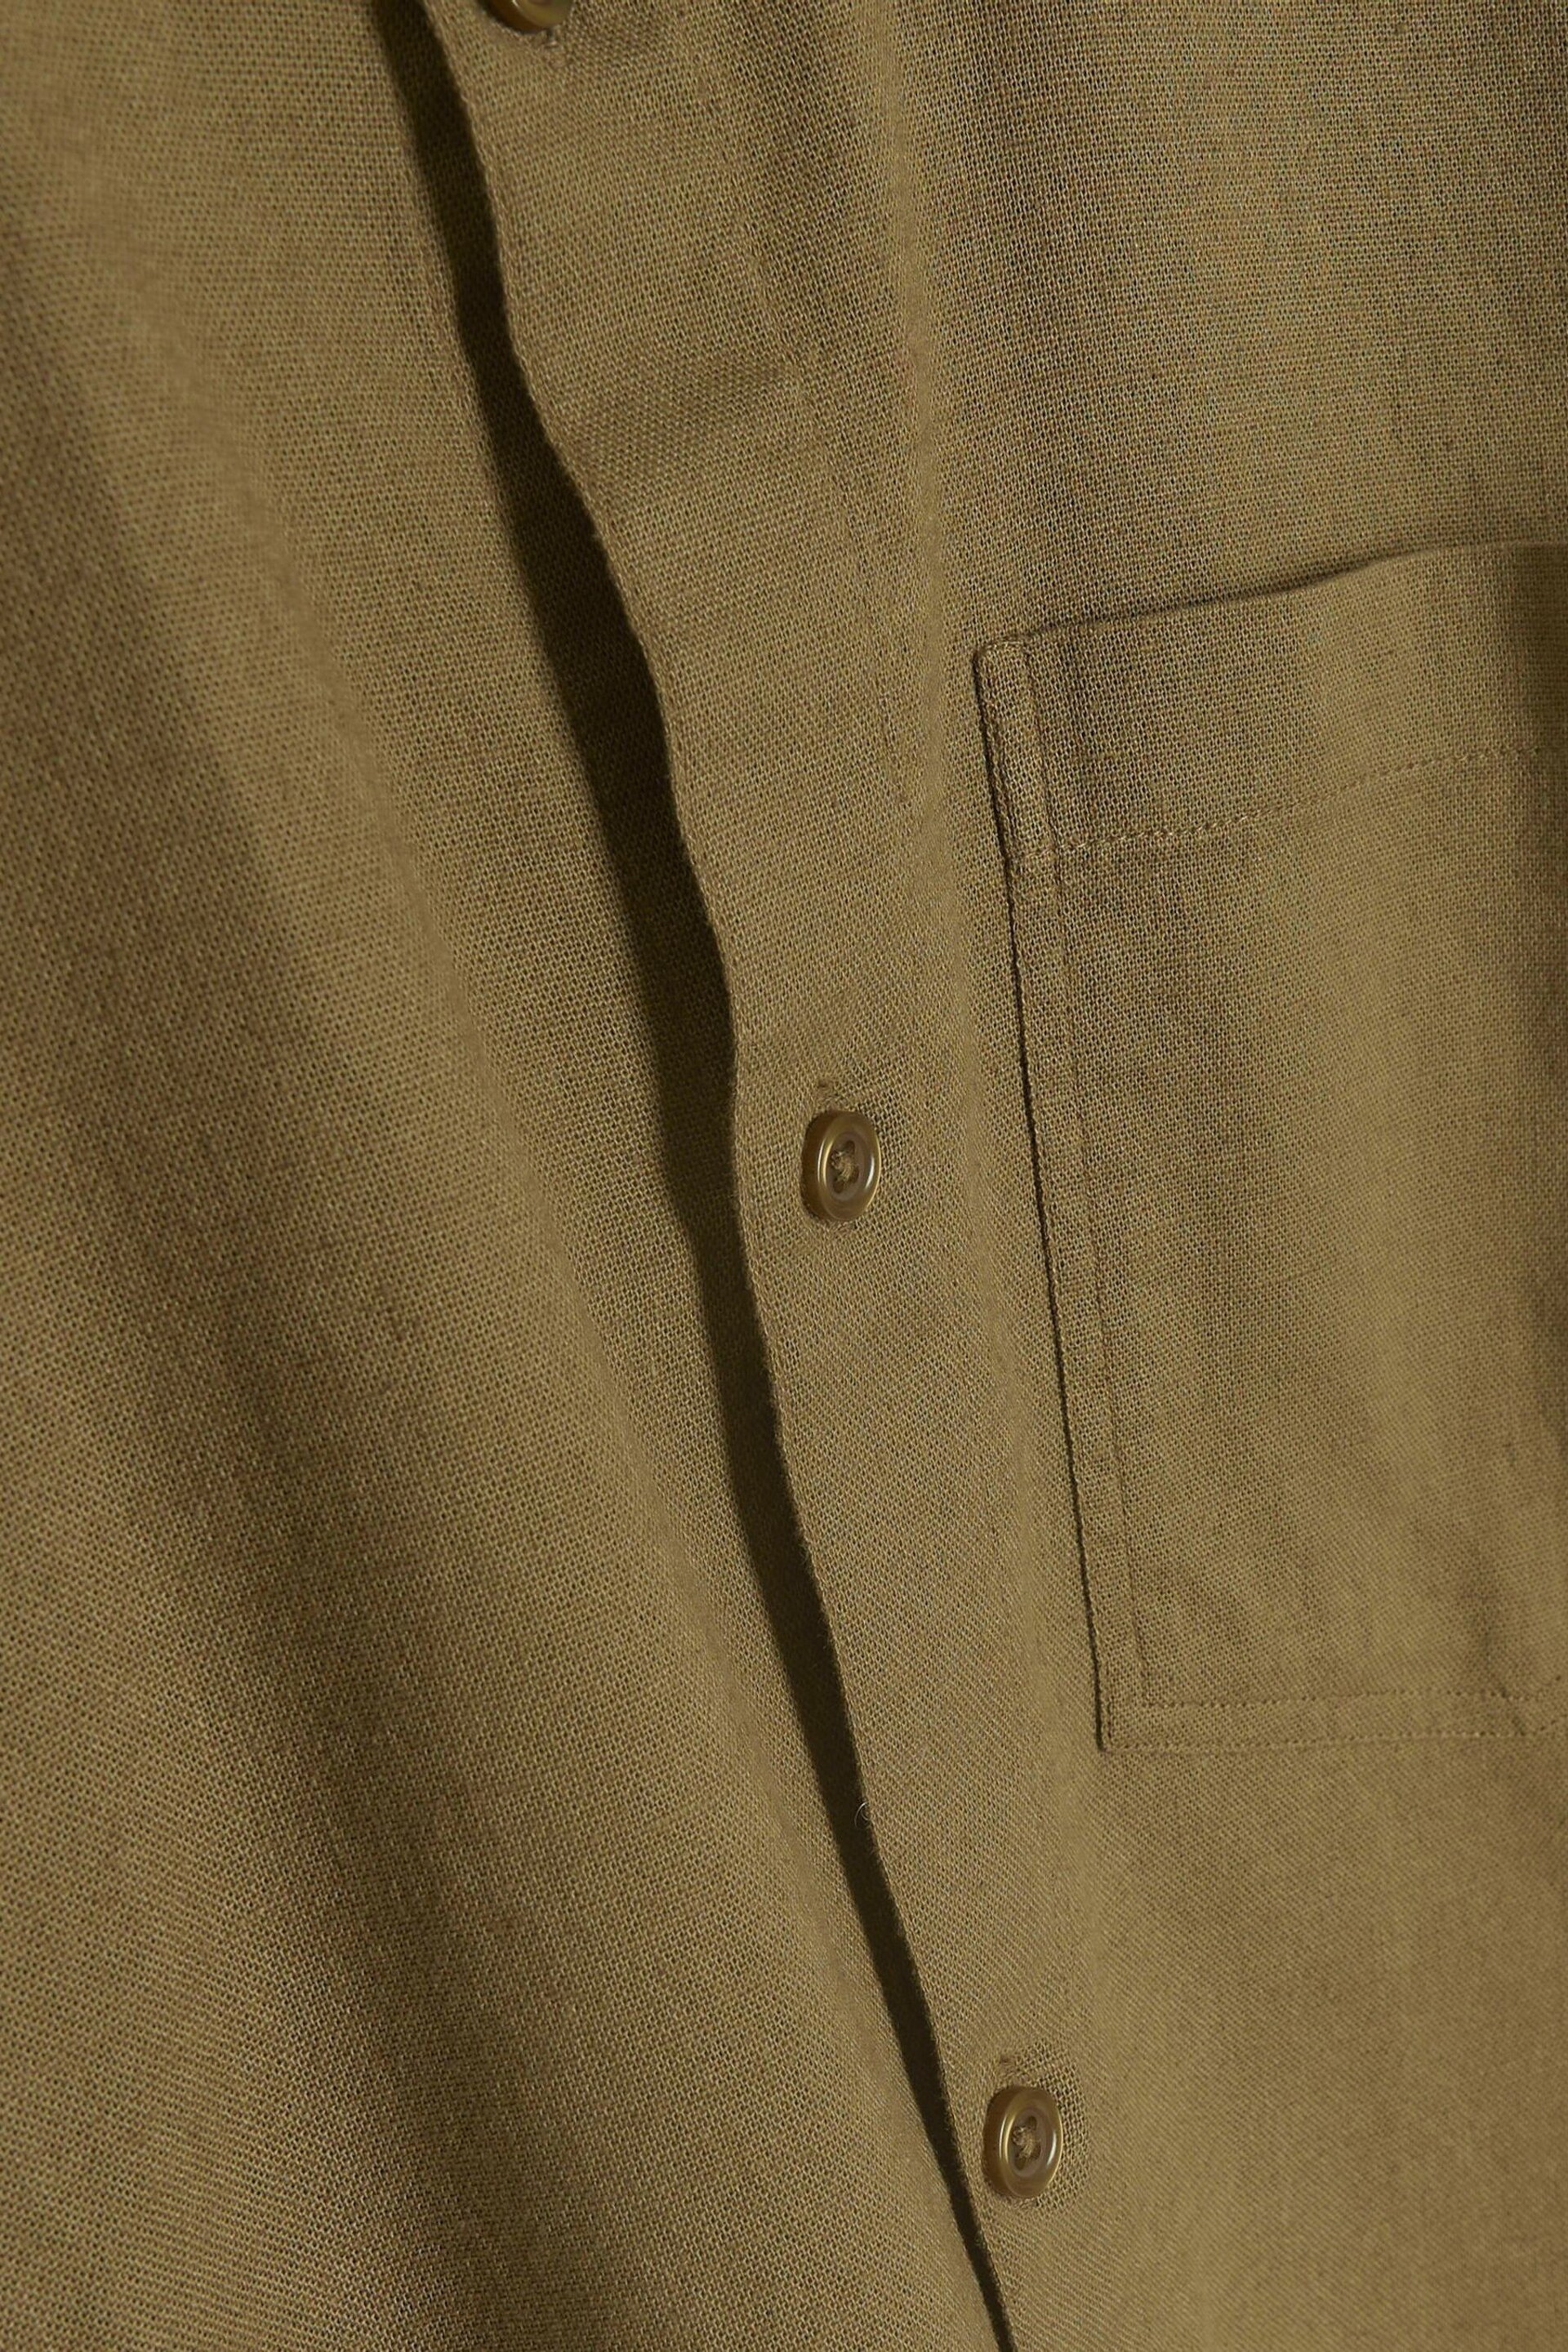 River Island Green Regular Fit Long Sleeve Linen Blend Shirt - Image 4 of 4